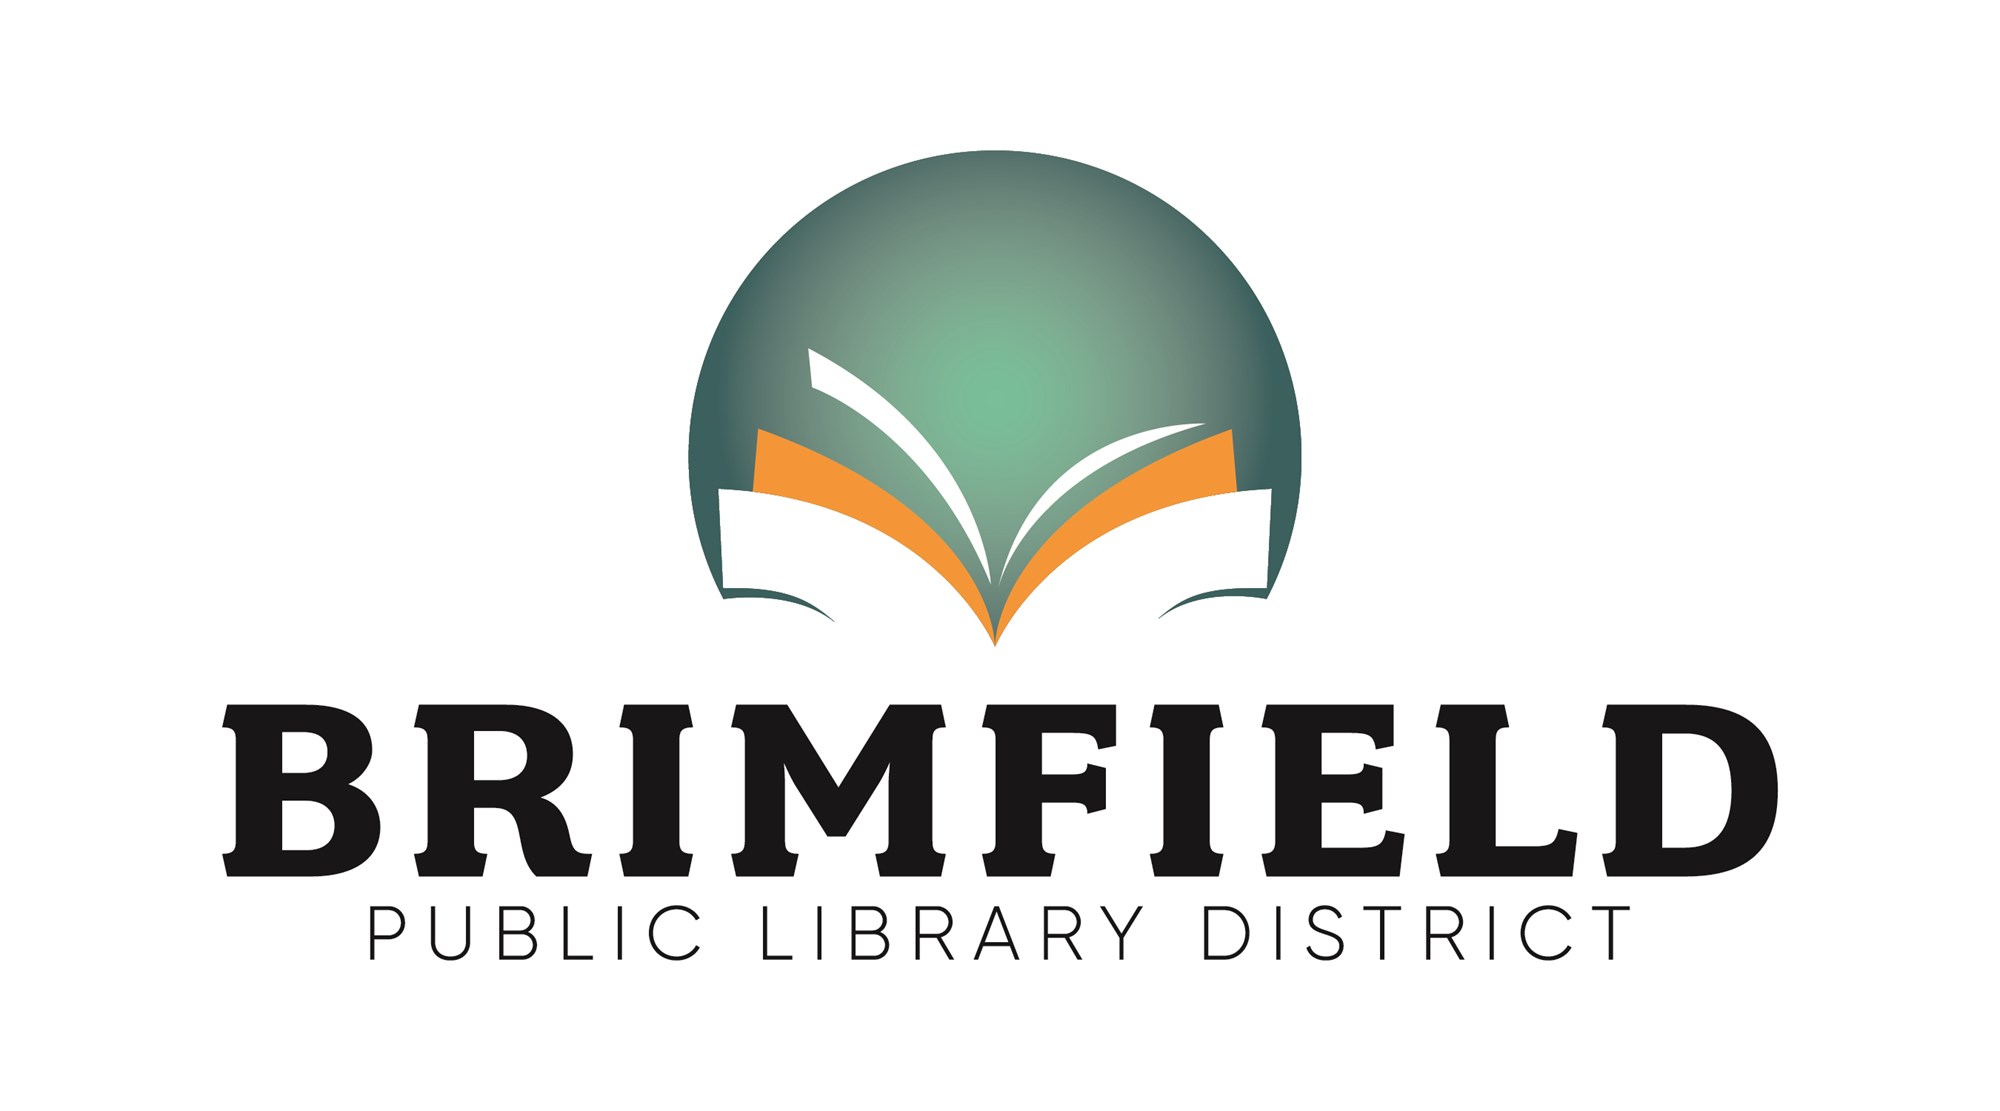 Brimfield Public Library District